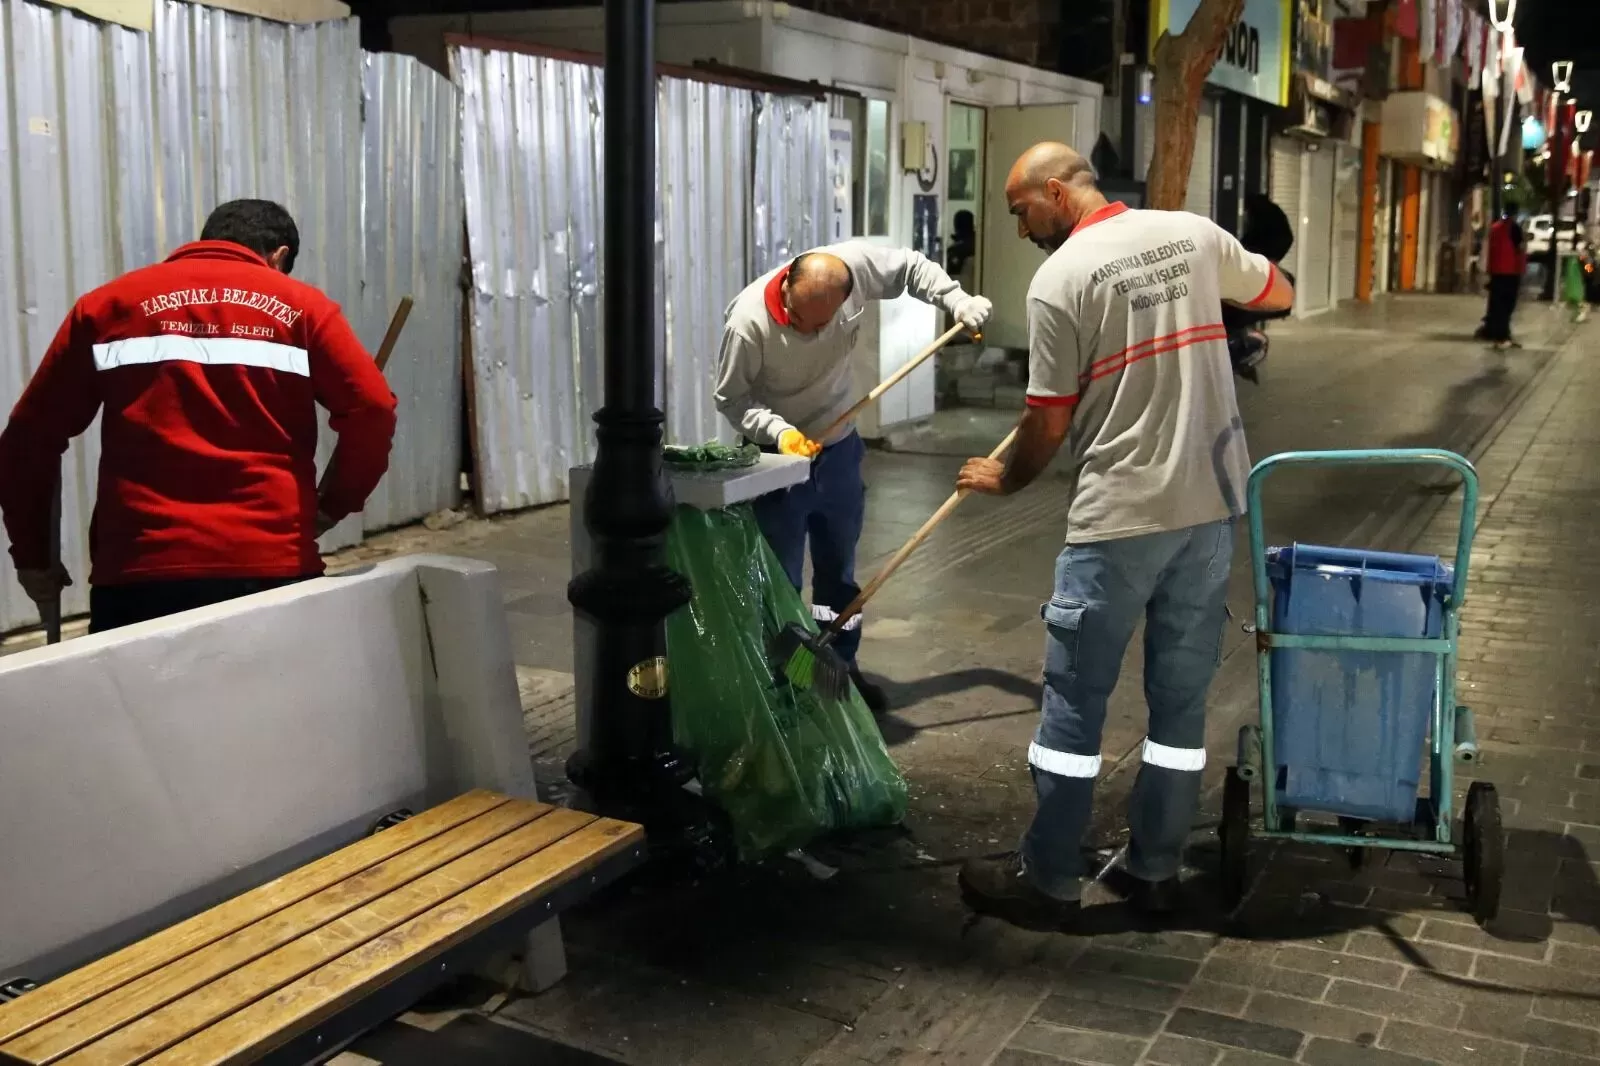 Daha temiz bir kent hedefi ile yola çıkan Karşıyaka Belediyesi, kentin en yoğun bölgelerinden Karşıyaka Çarşısı'nda her cuma gecesi özel bir temizlik programı uyguluyor.